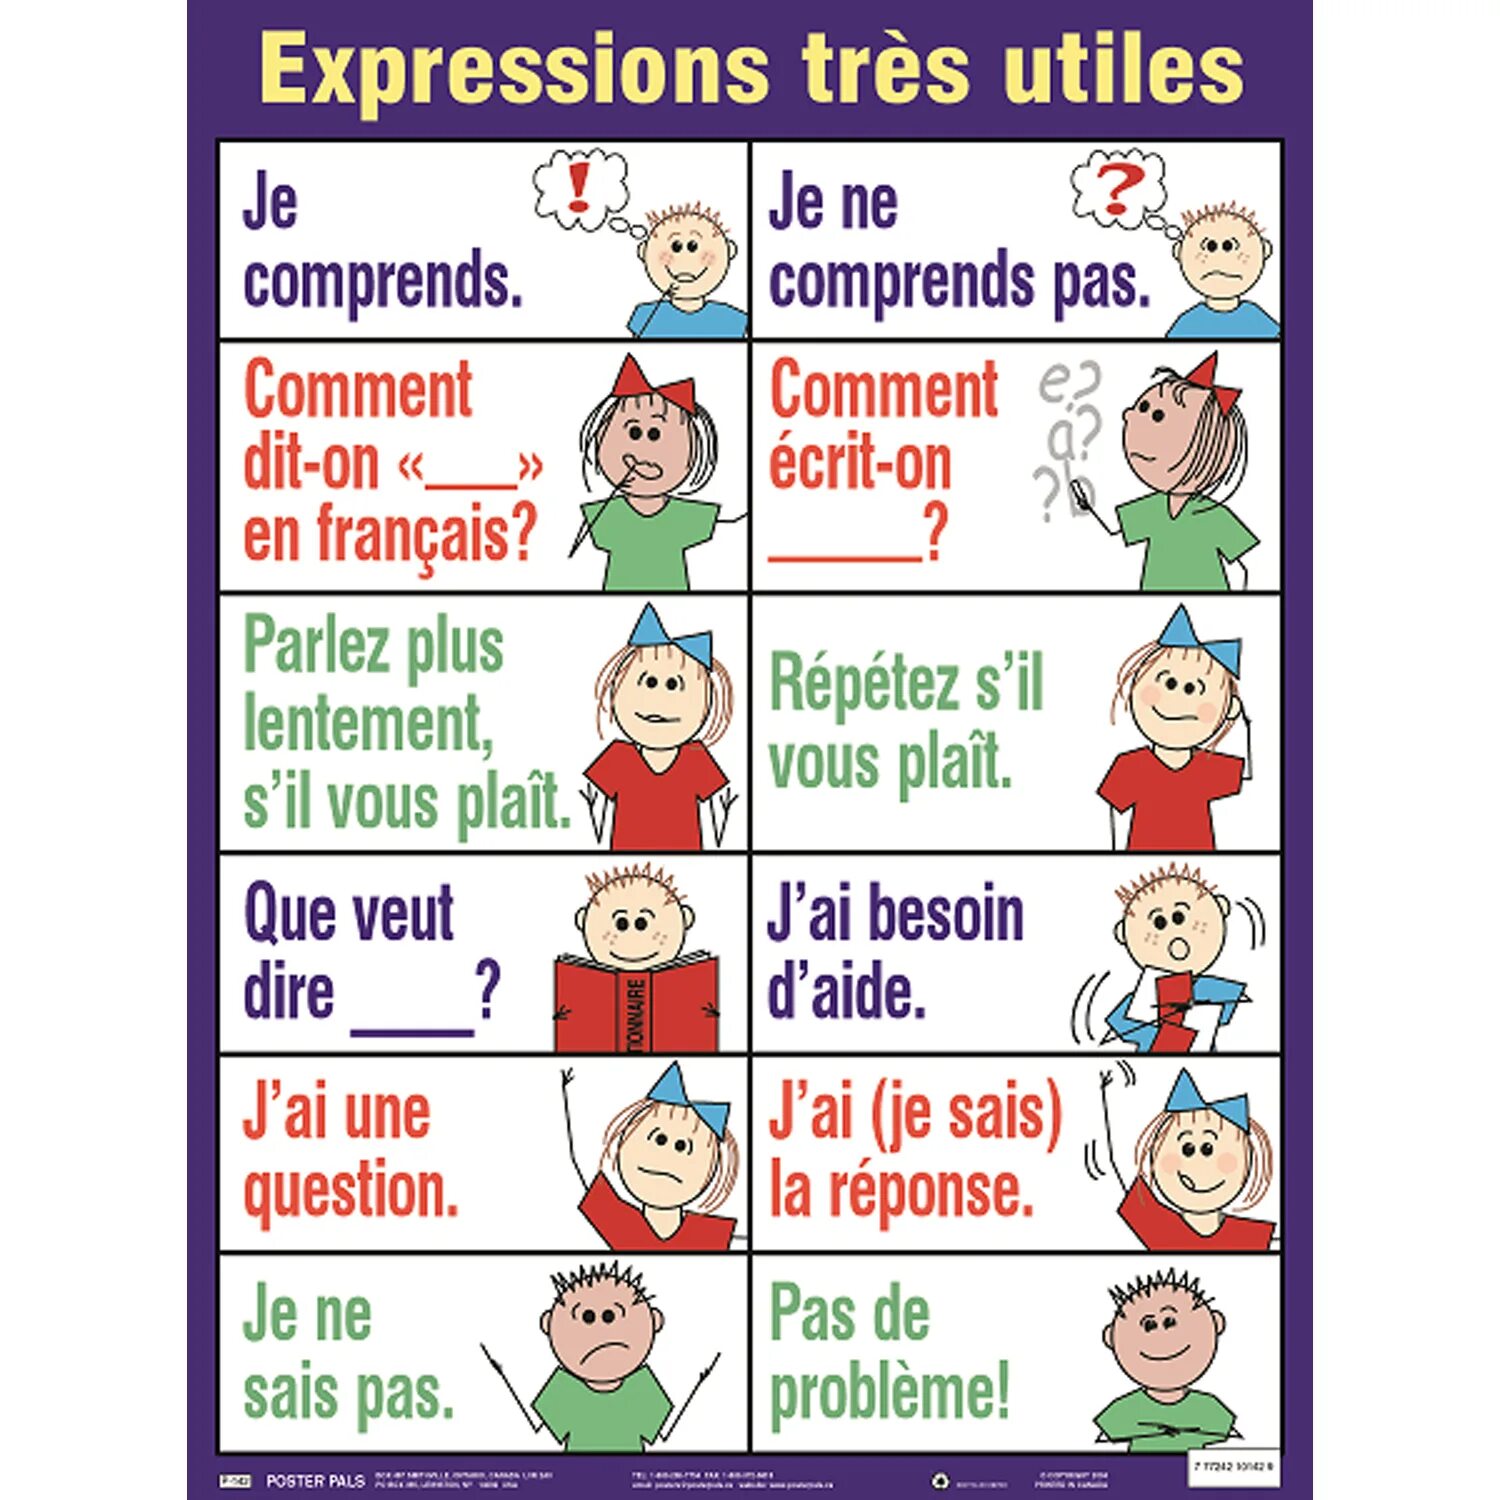 Serie en francais. Comment французский. On ecrit на французском. Французский язык parler. Parler Français penser Français картинки.